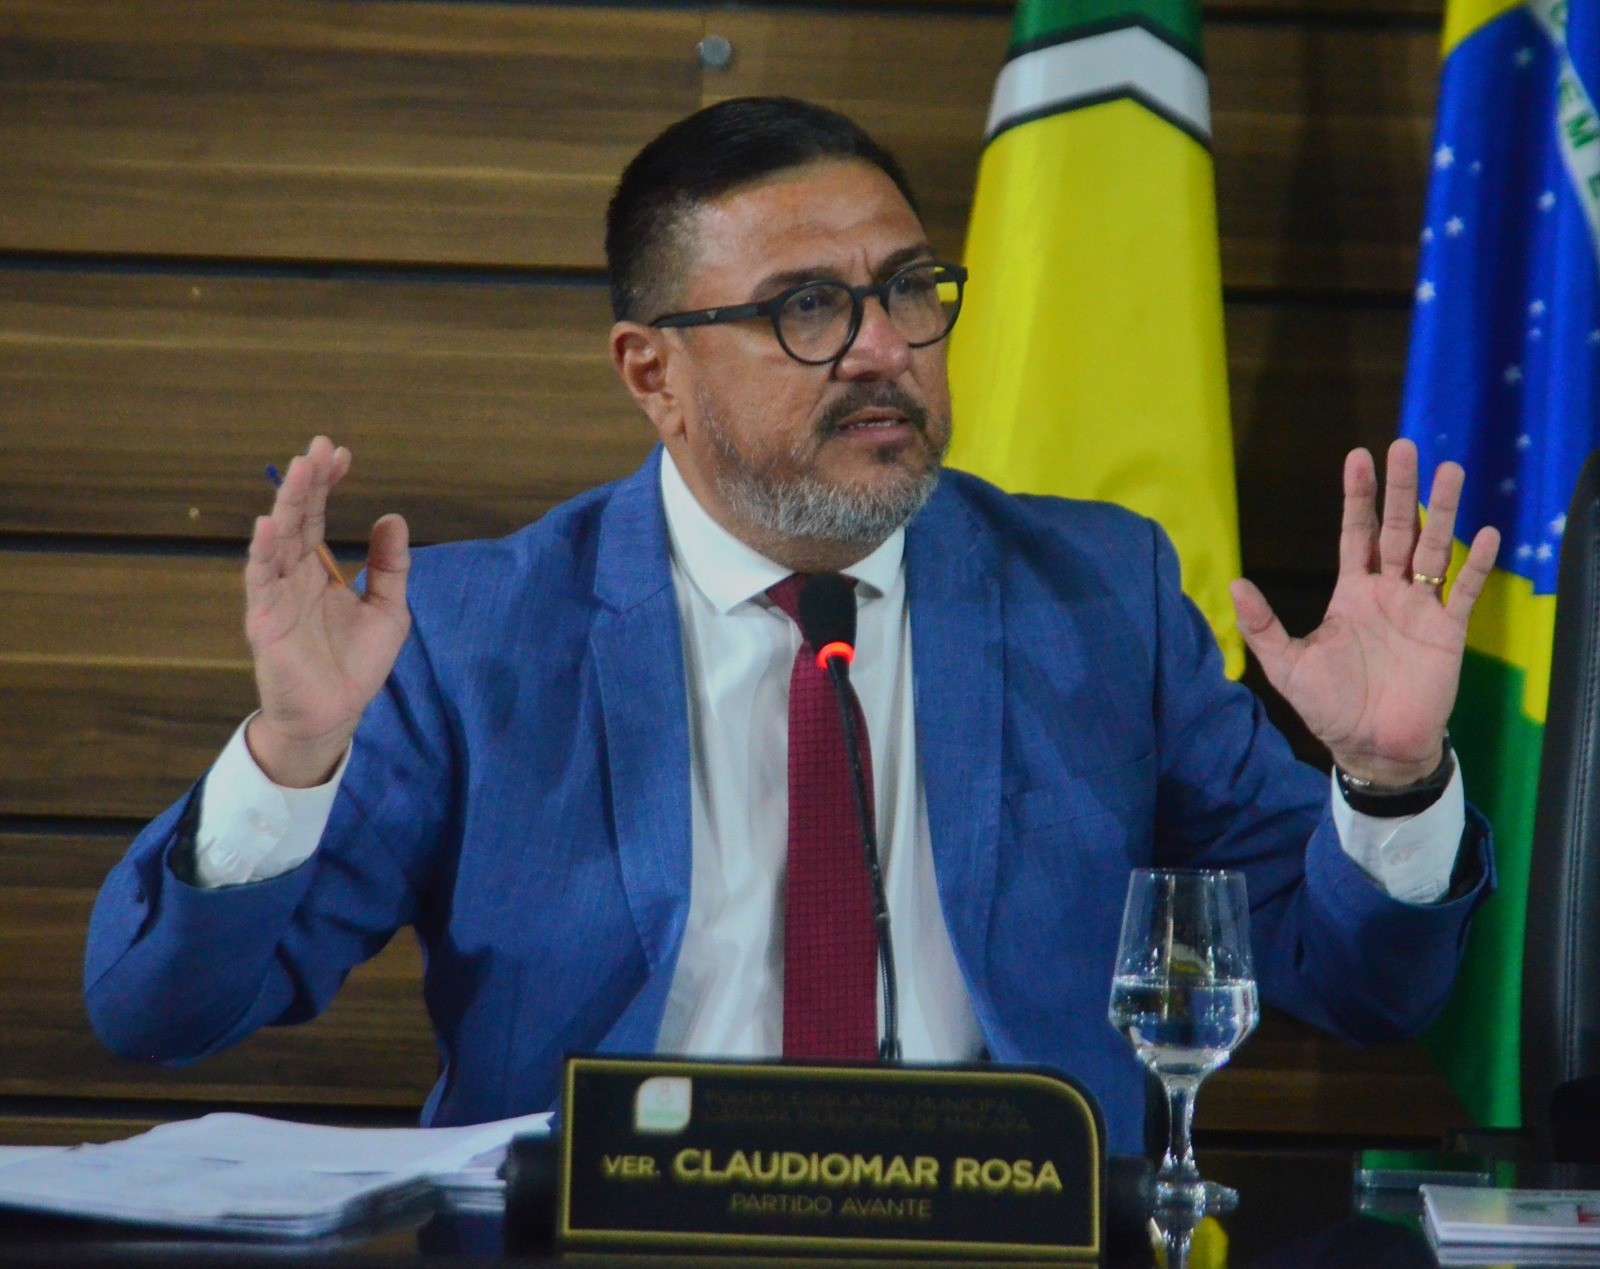 Vereador Claudiomar Rosa tem PL aprovado que cria o Dia Municipal do Ritmista